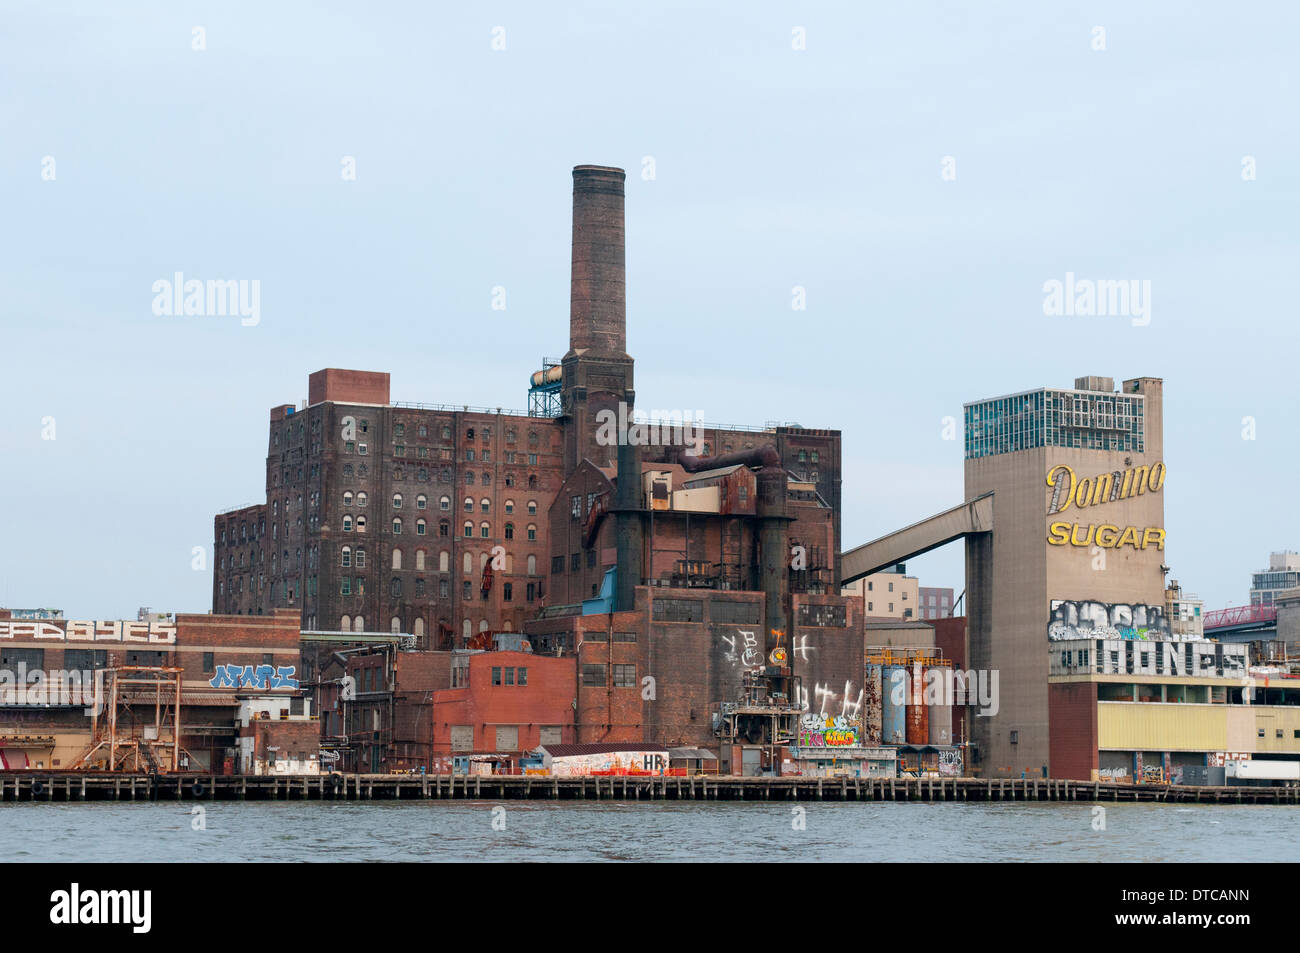 Il Domino raffineria di zucchero, visto dalla East River in New York City, Stati Uniti d'America Foto Stock